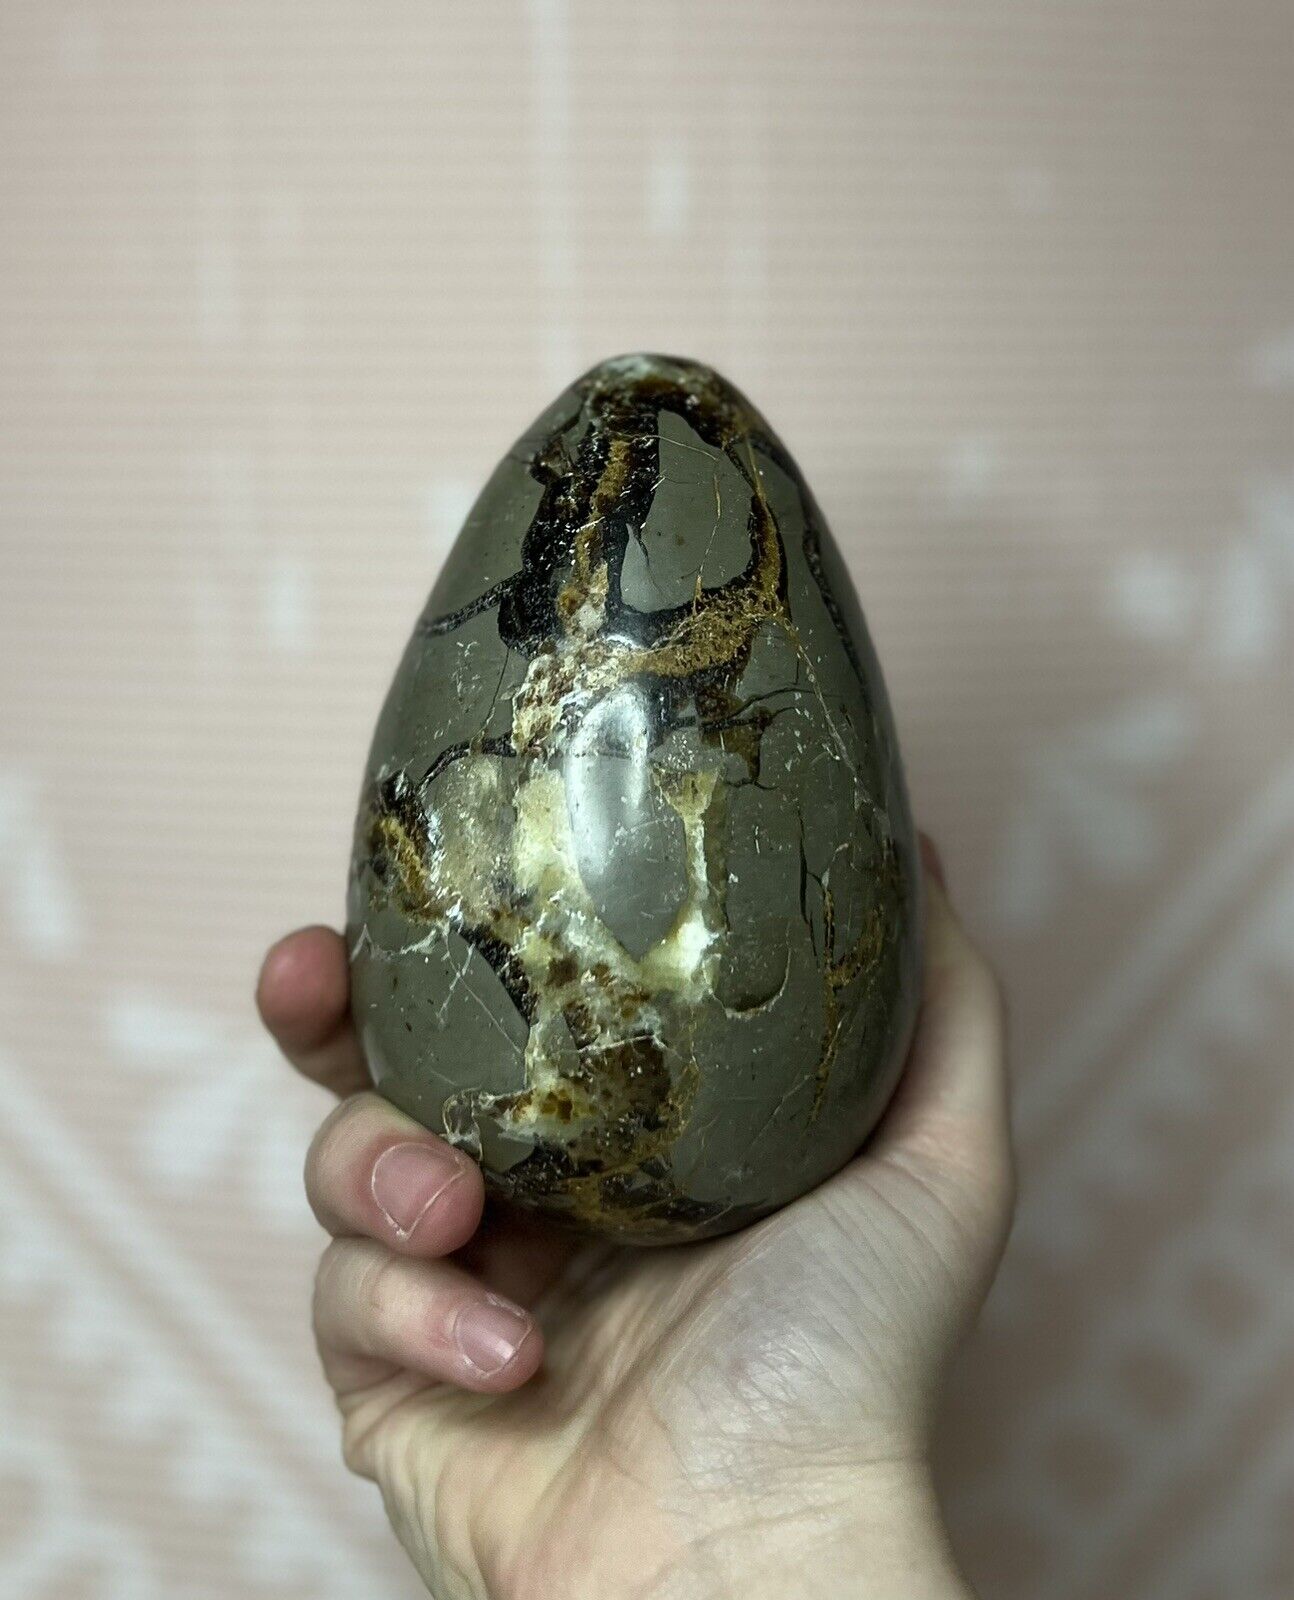 Septarian Stone Natural Beautiful Dragon Egg Crystal Large 1017g